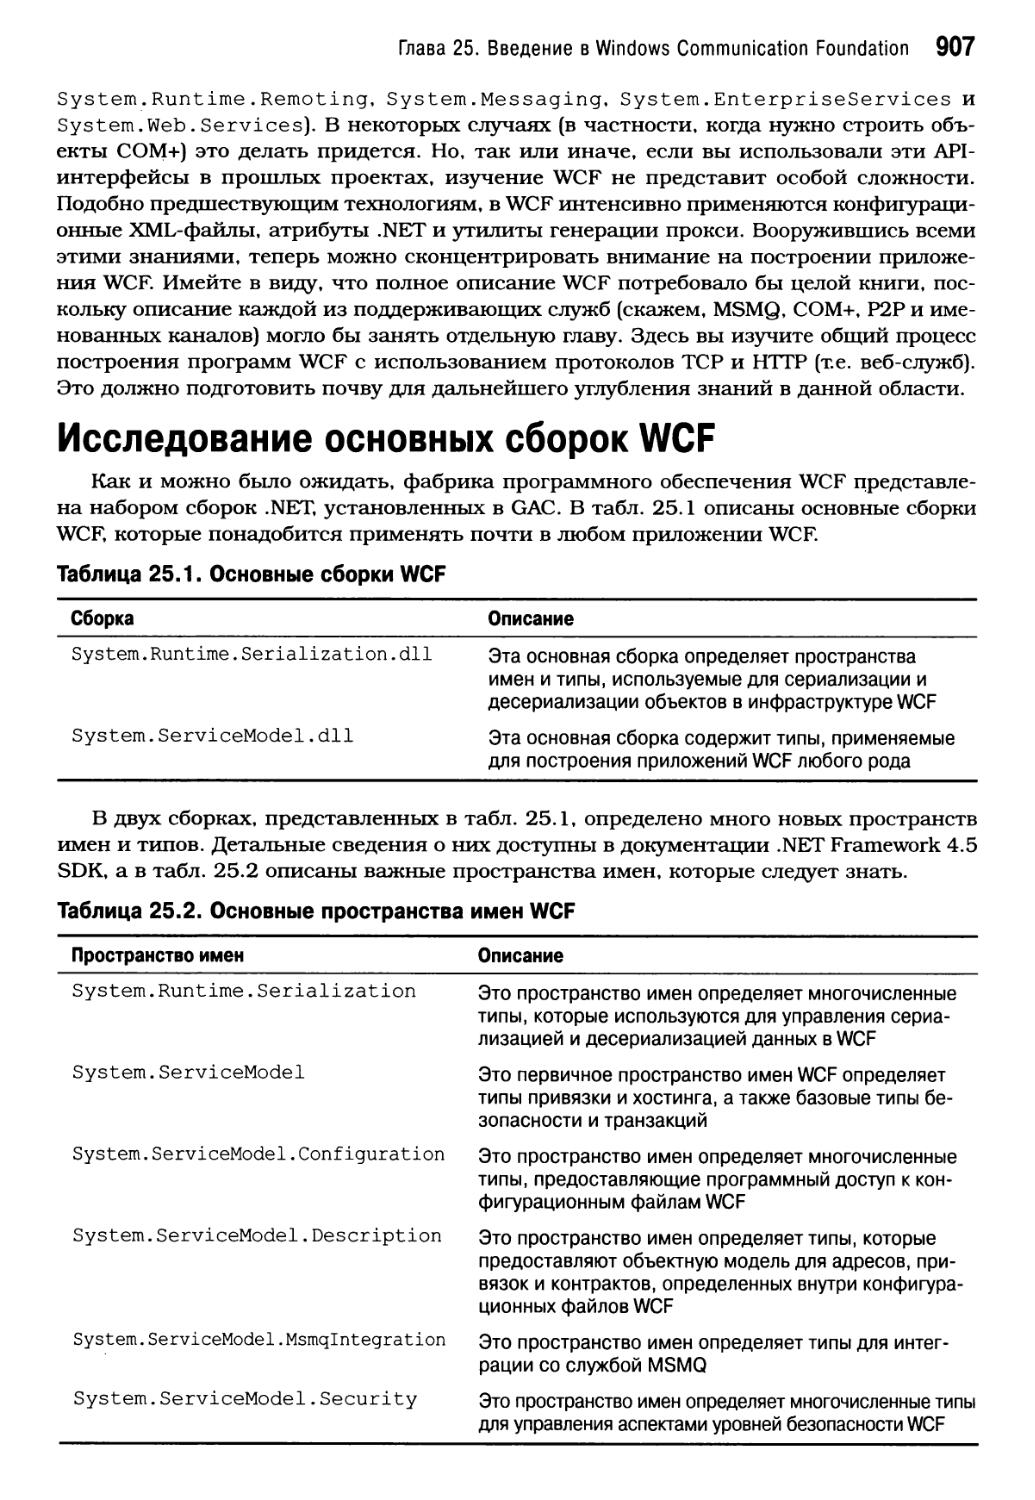 Исследование основных сборок WCF